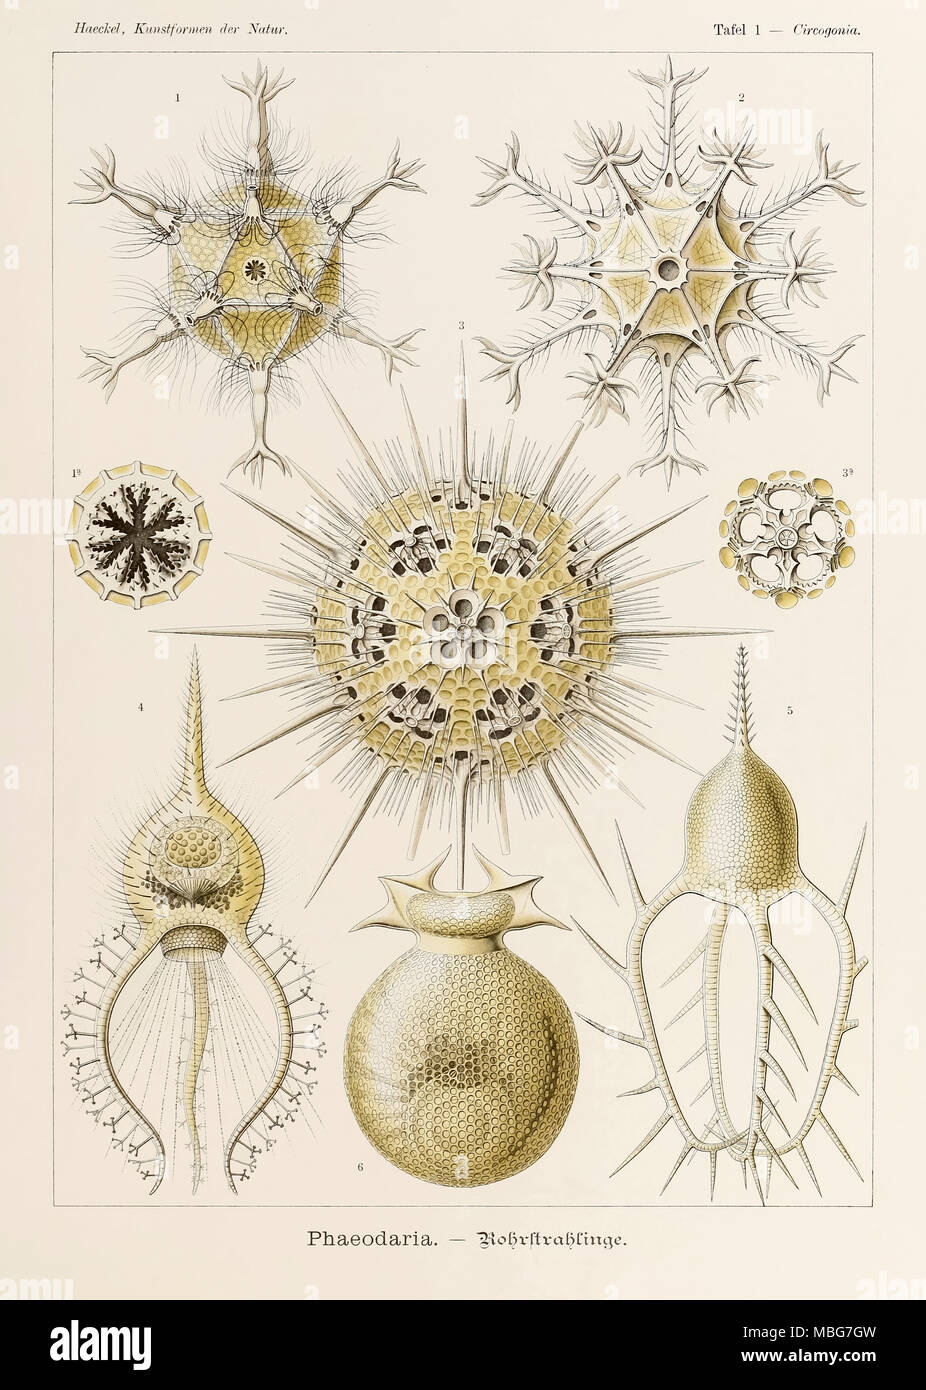 Placa 1 Circogonia Phaeodaria desde "Kunstformen der Natur" (formas artísticas en la naturaleza), ilustrado por Ernst Haeckel (1834-1919). Ver más información a continuación. Foto de stock